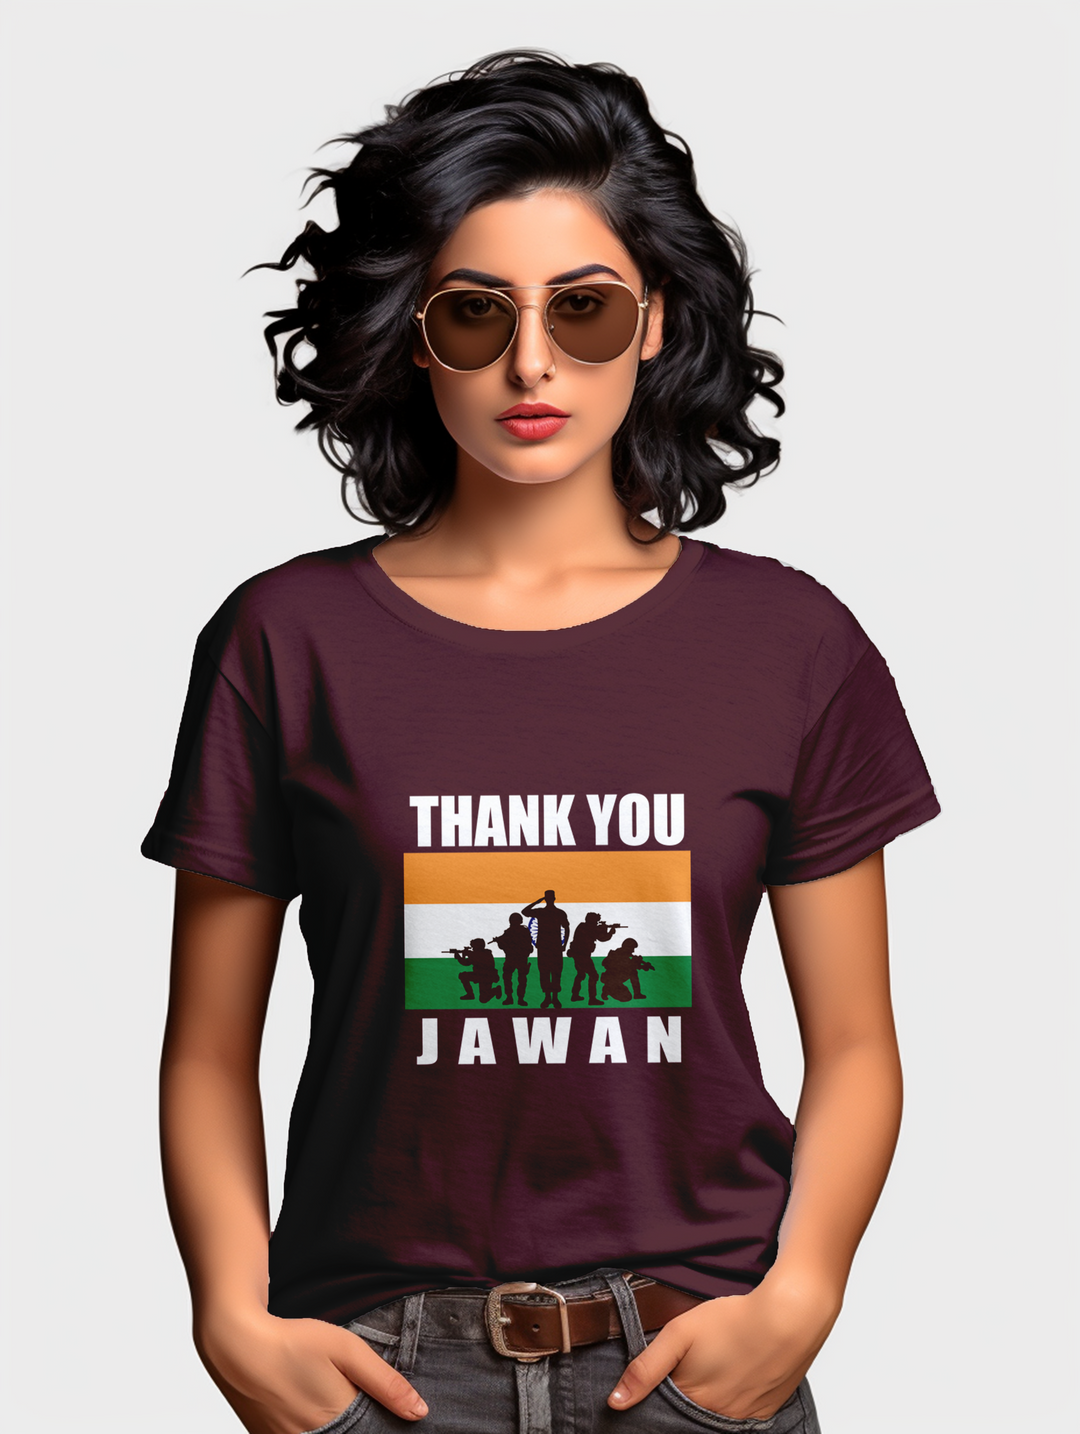 Women's Thank You Jawan tee